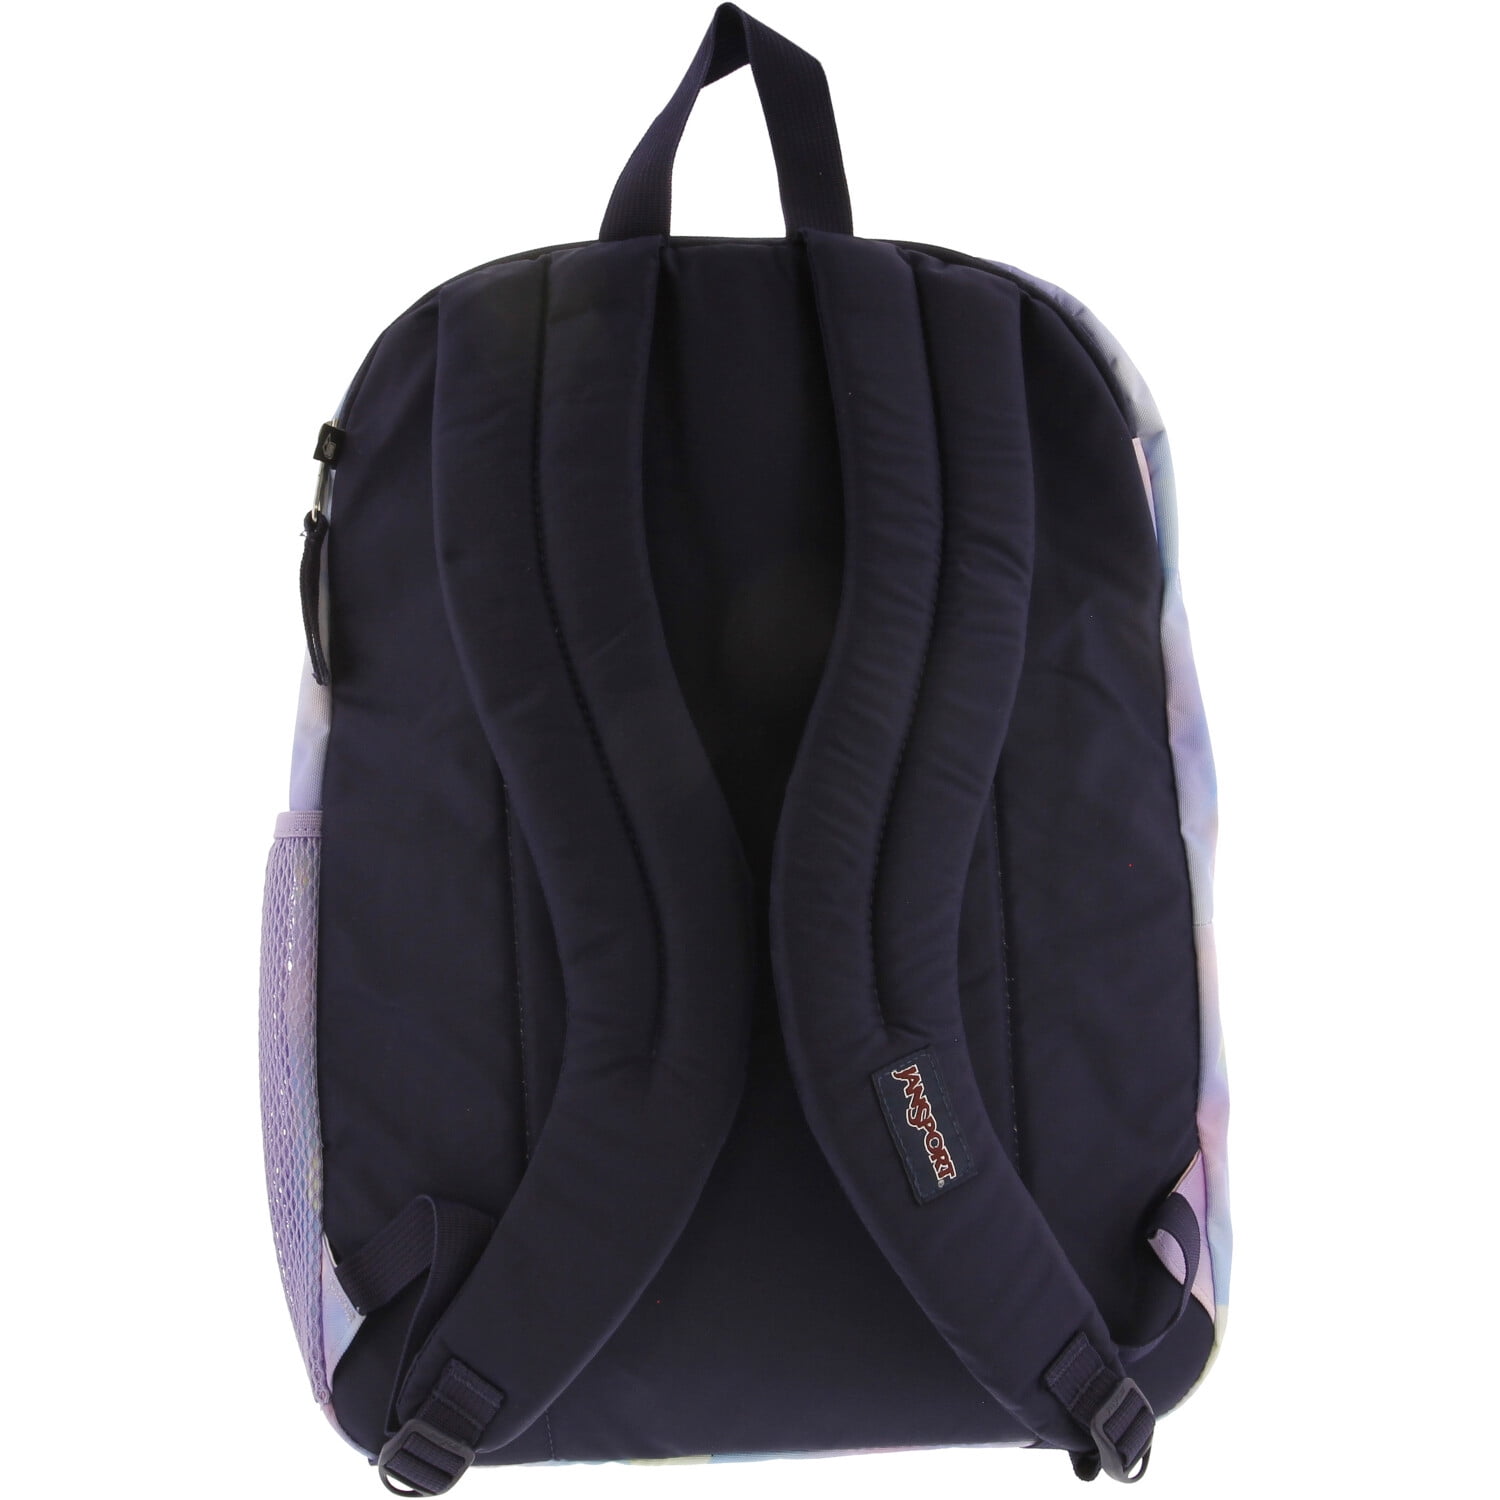 JanSport Big Student 15-inch Laptop School Backpack - Black